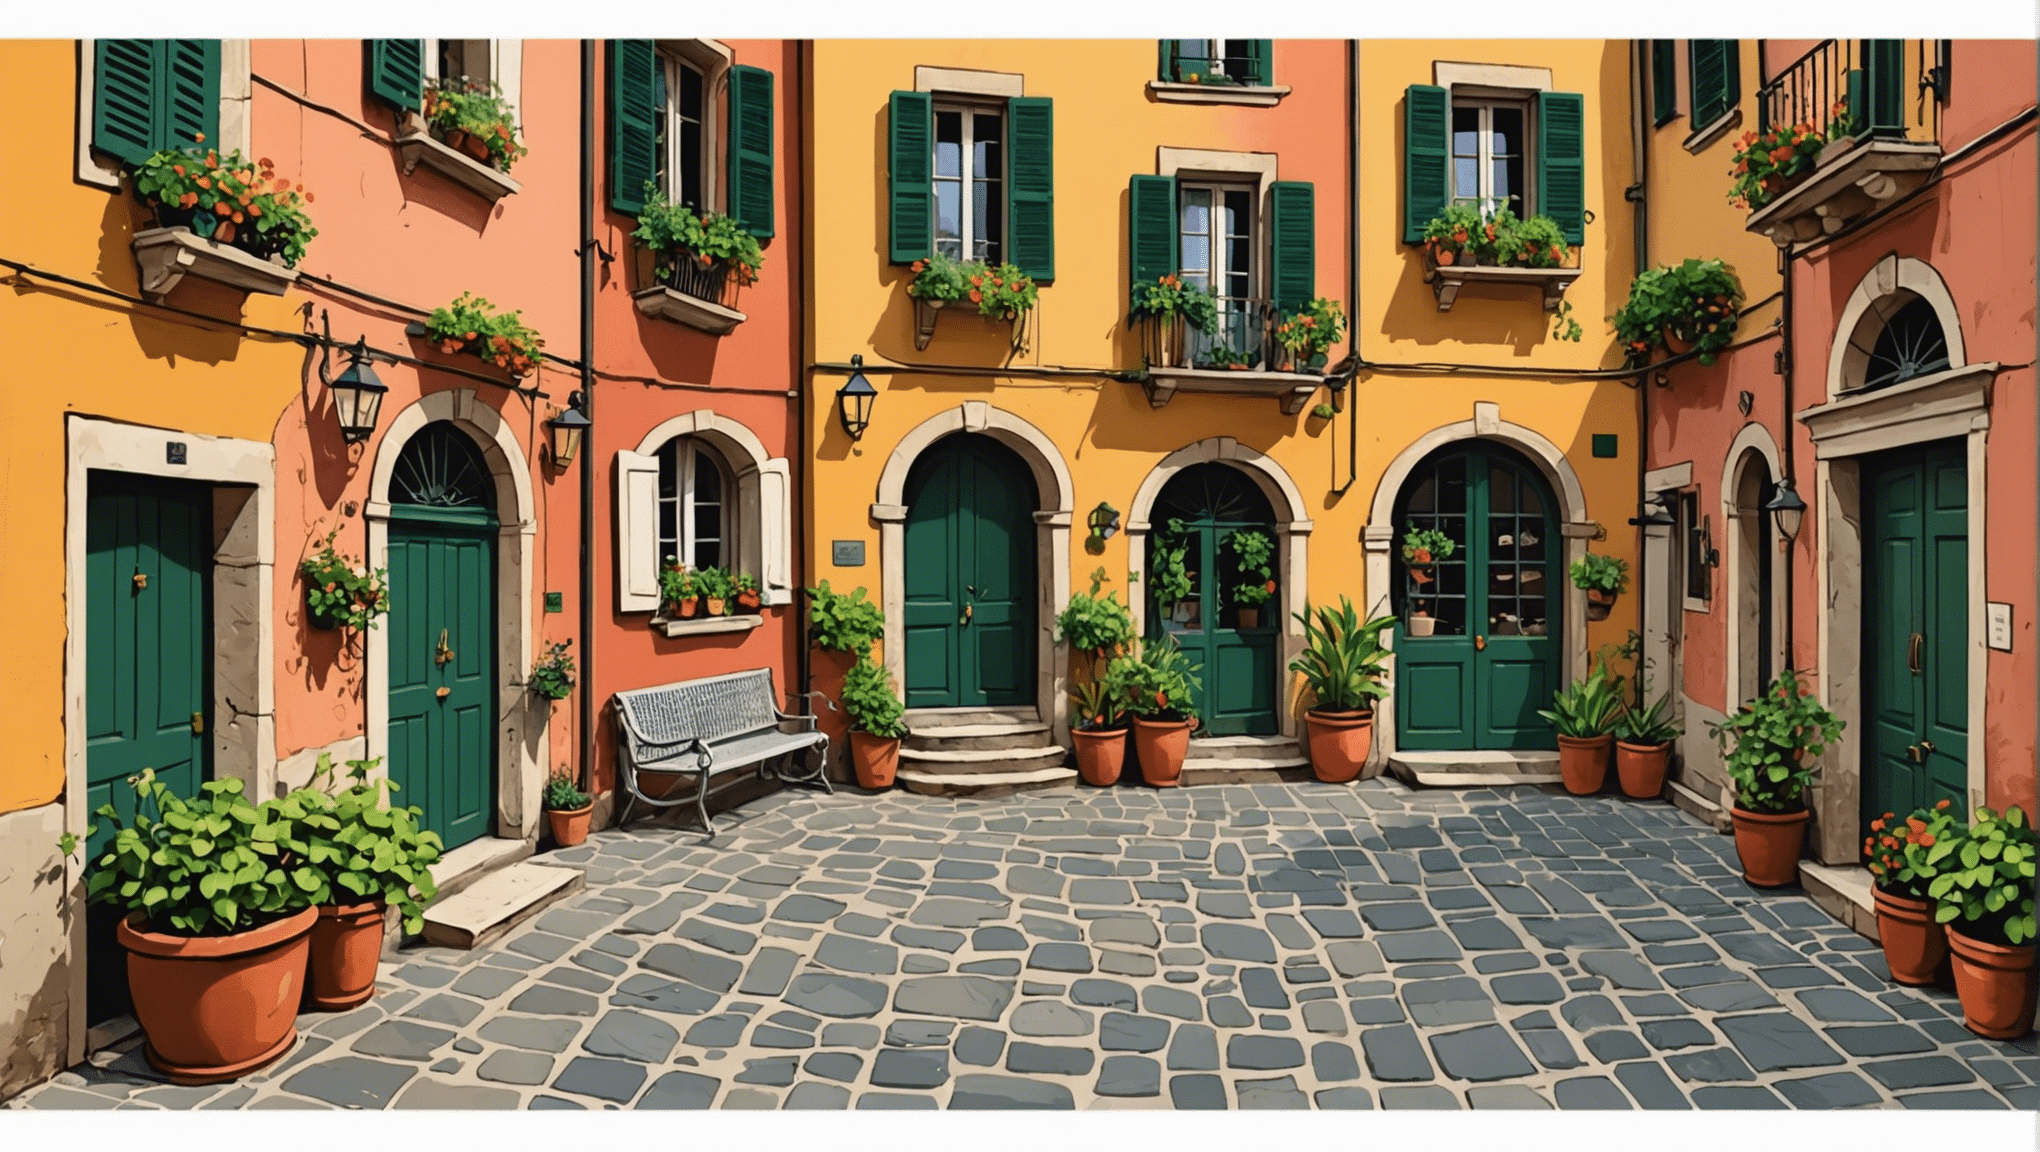 इटली में टिपिंग के बारे में वह सब कुछ जानें जो आपको जानना आवश्यक है: युक्तियाँ और परंपराएँ। इटली में आपके प्रवास के दौरान सफल टिपिंग के लिए संपूर्ण मार्गदर्शिका।